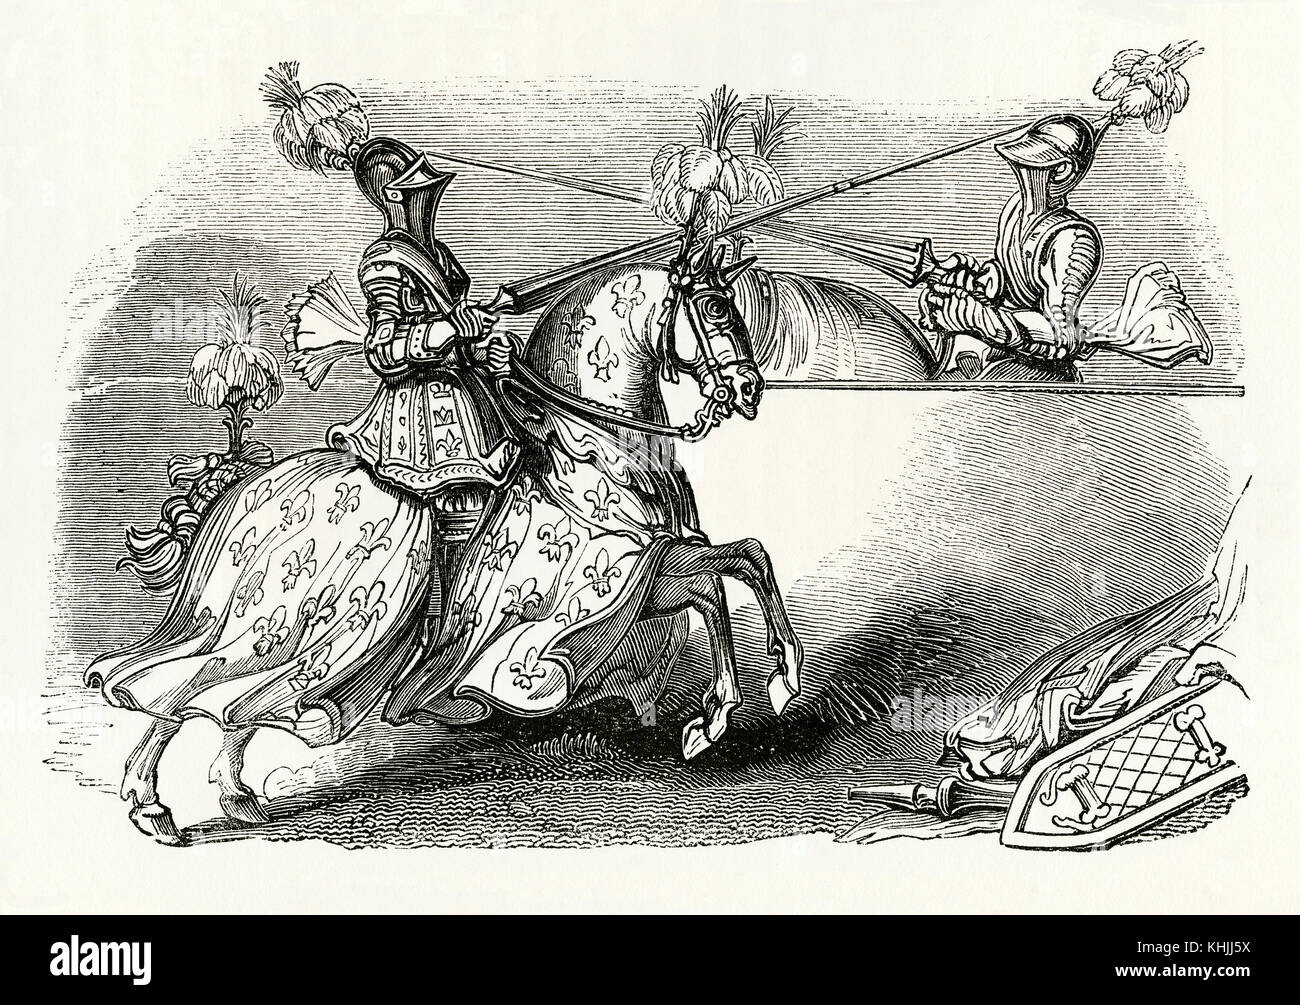 Une vieille gravure représentant deux chevaliers joutant à l'époque médiévale. Jouting est un concours entre deux cavaliers portant une armure et brandissant des lances avec des bouts émoussés. Il faisait souvent partie d'un tournoi. Le but principal était de frapper l'adversaire en le conduisant à grande vitesse, en atterrissant la lance sur le bouclier de l'adversaire ou en lui offrant une armure jouante et en le déportant. Banque D'Images